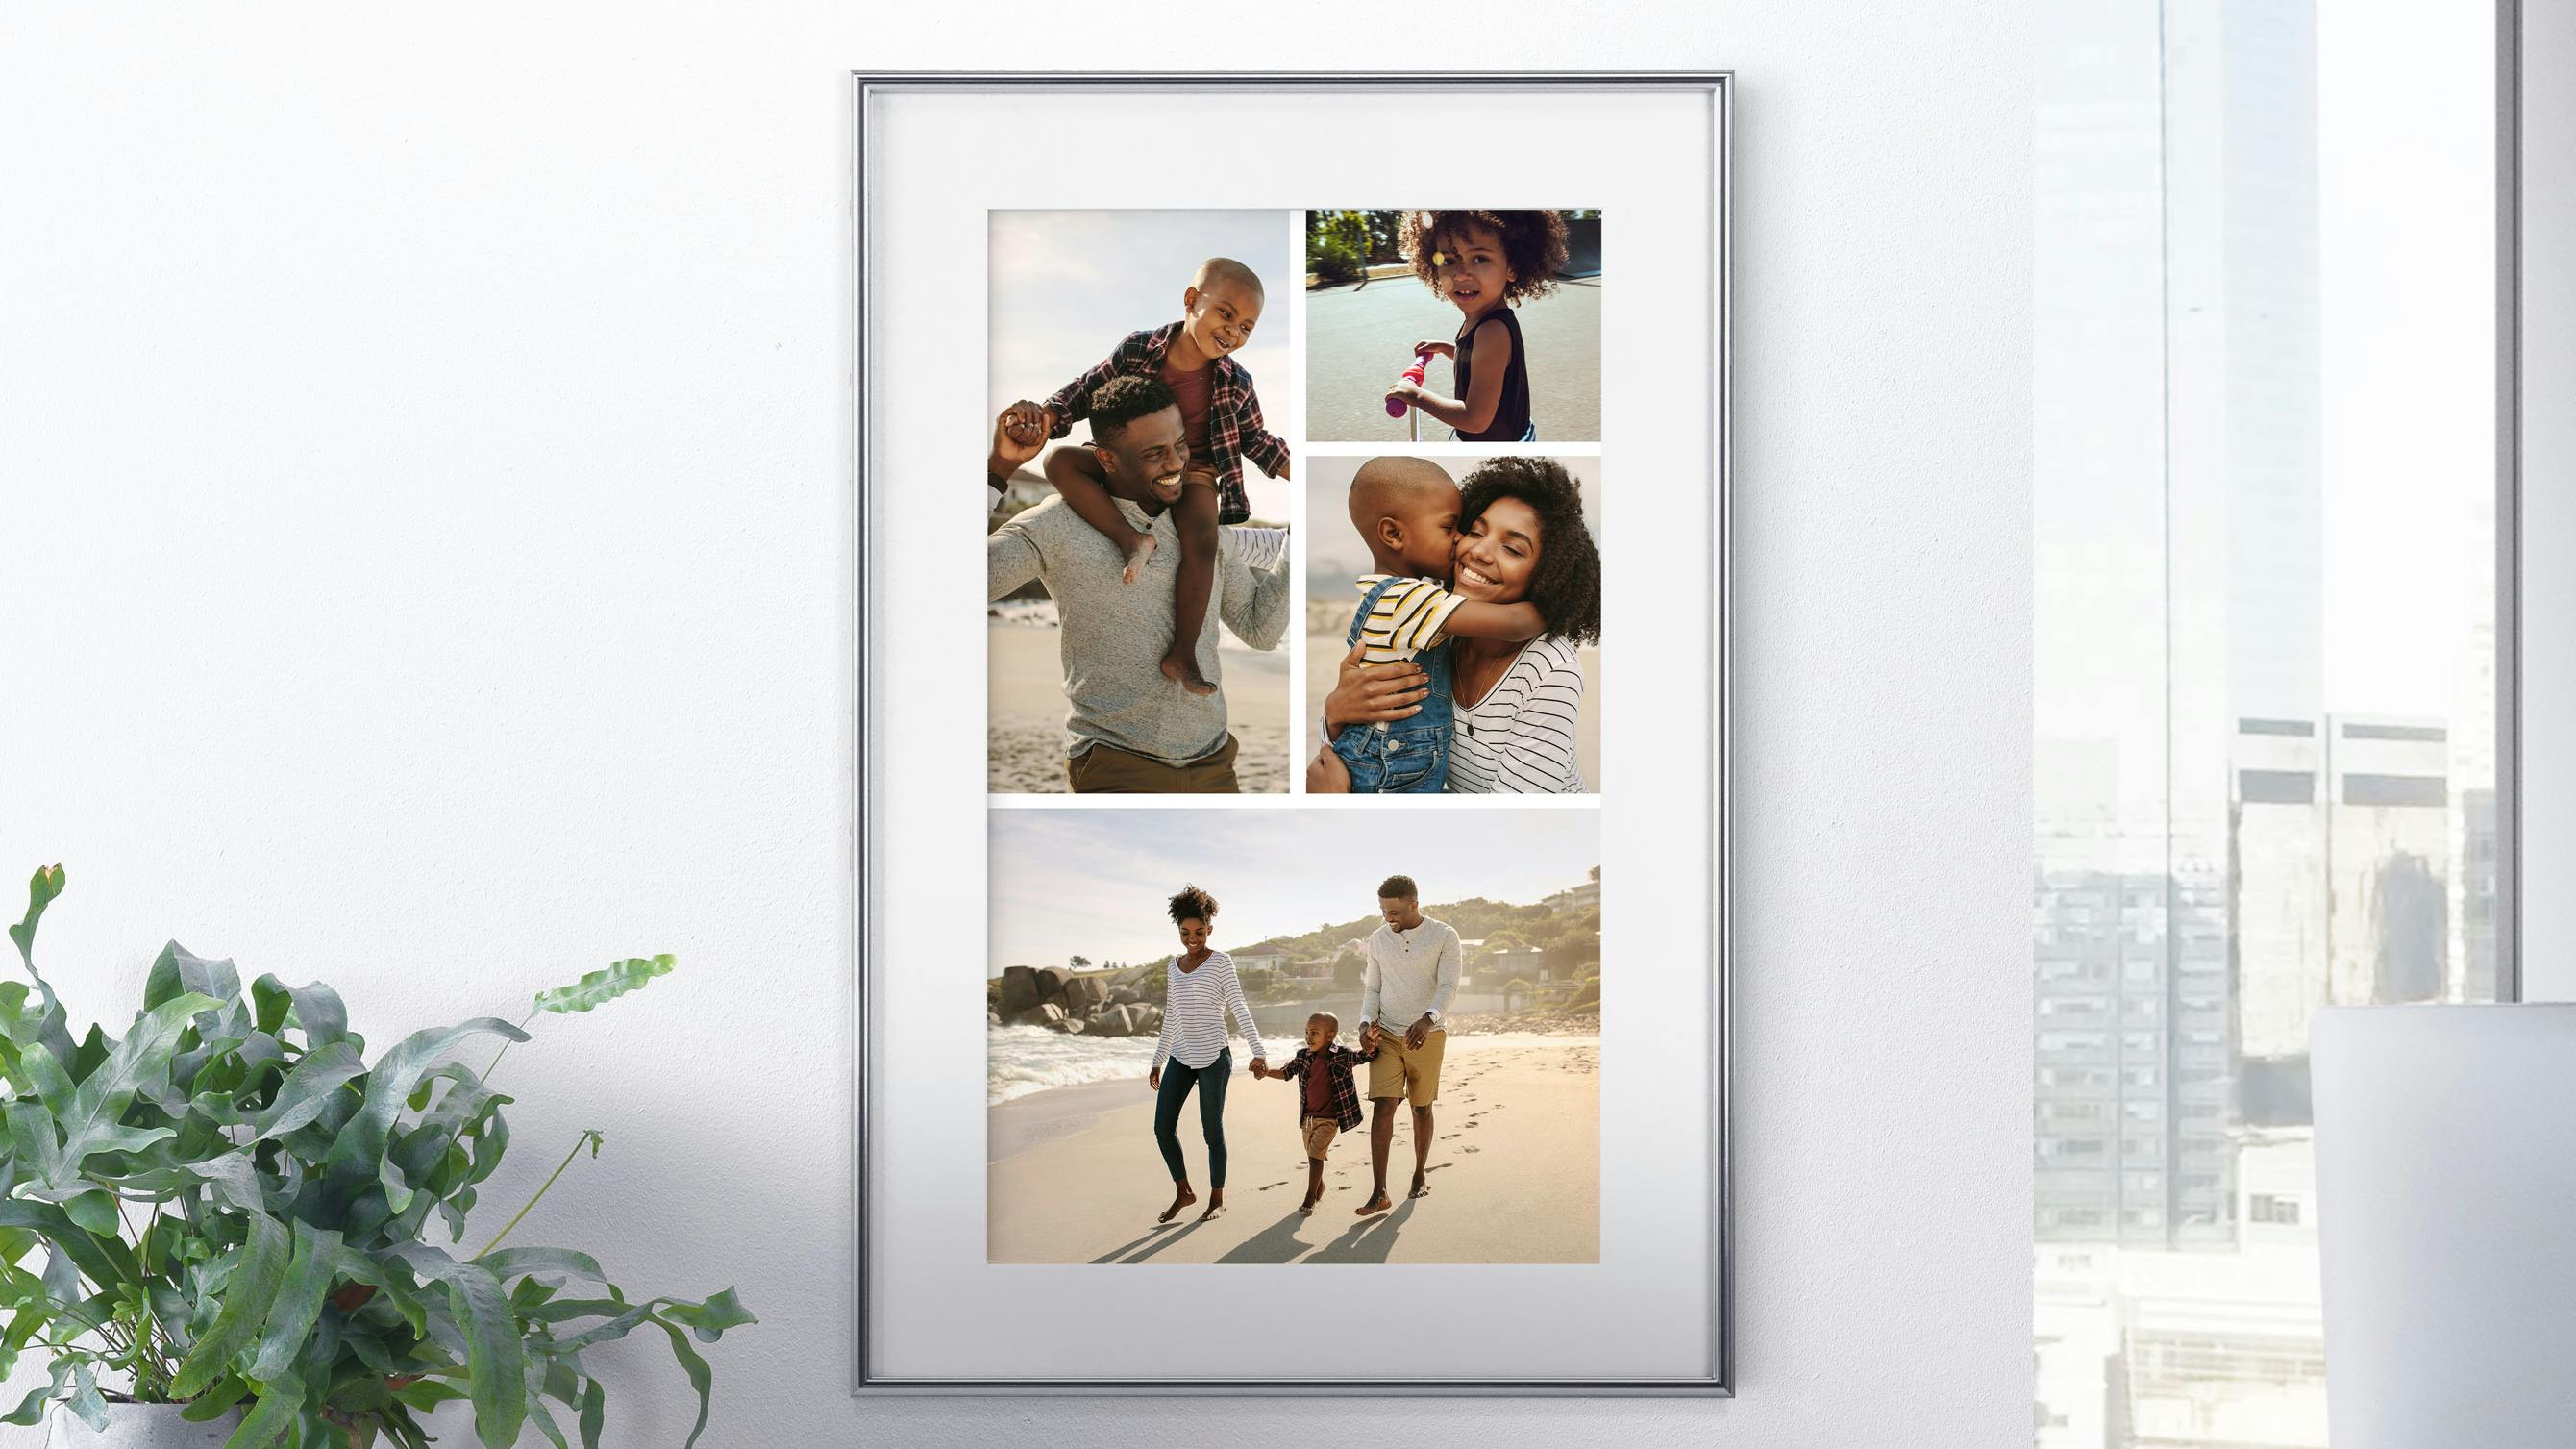 Fotocollage als Bild im Rahmen mit Familie am Strand im Ambiente